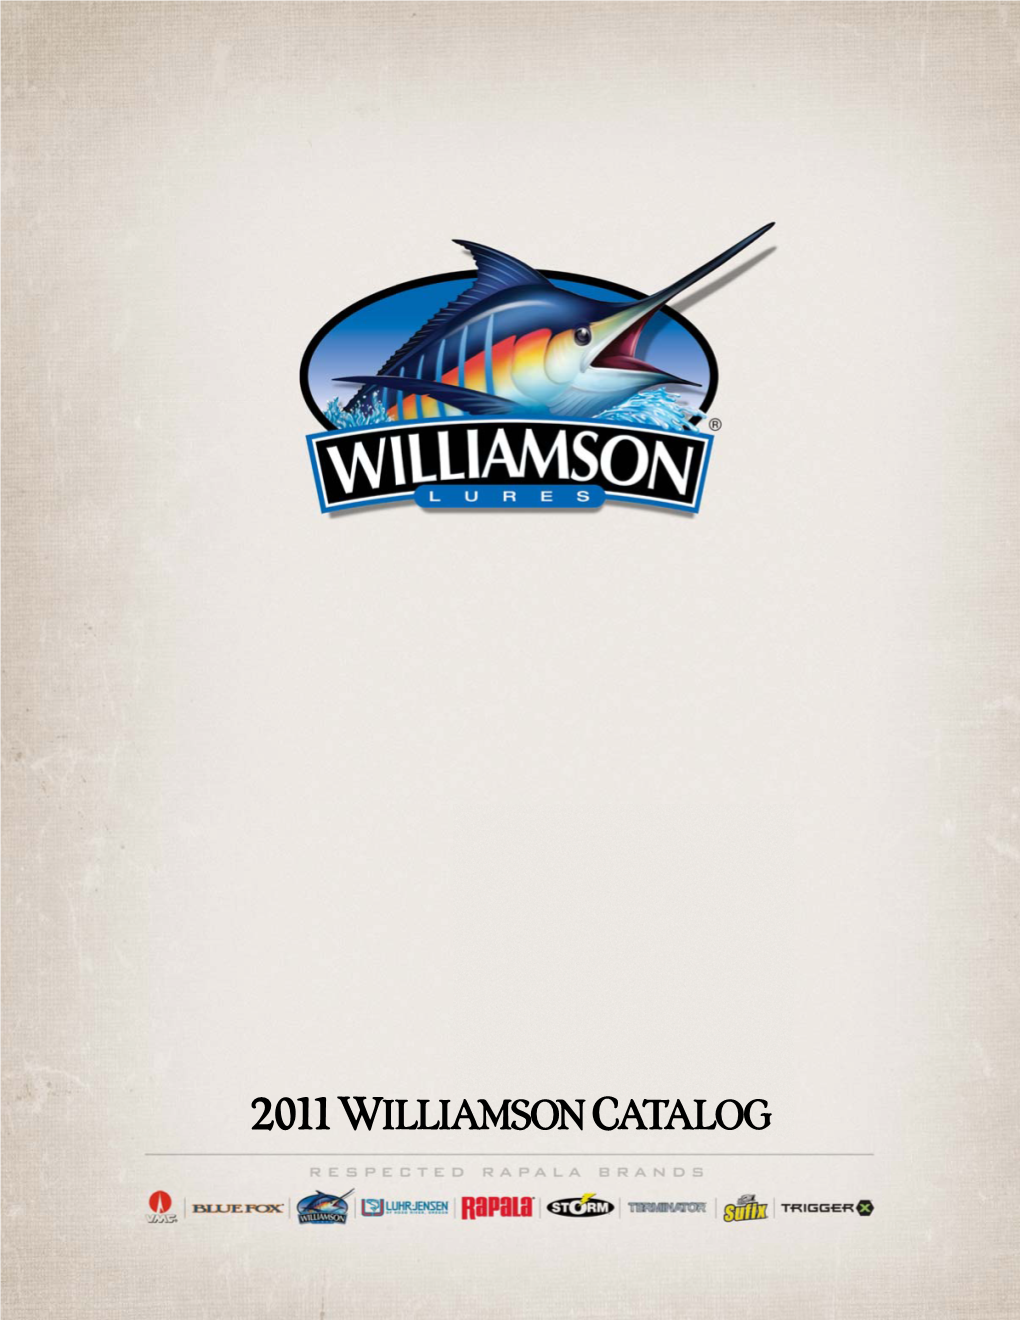 Williamson 2011 Catalog.Indd